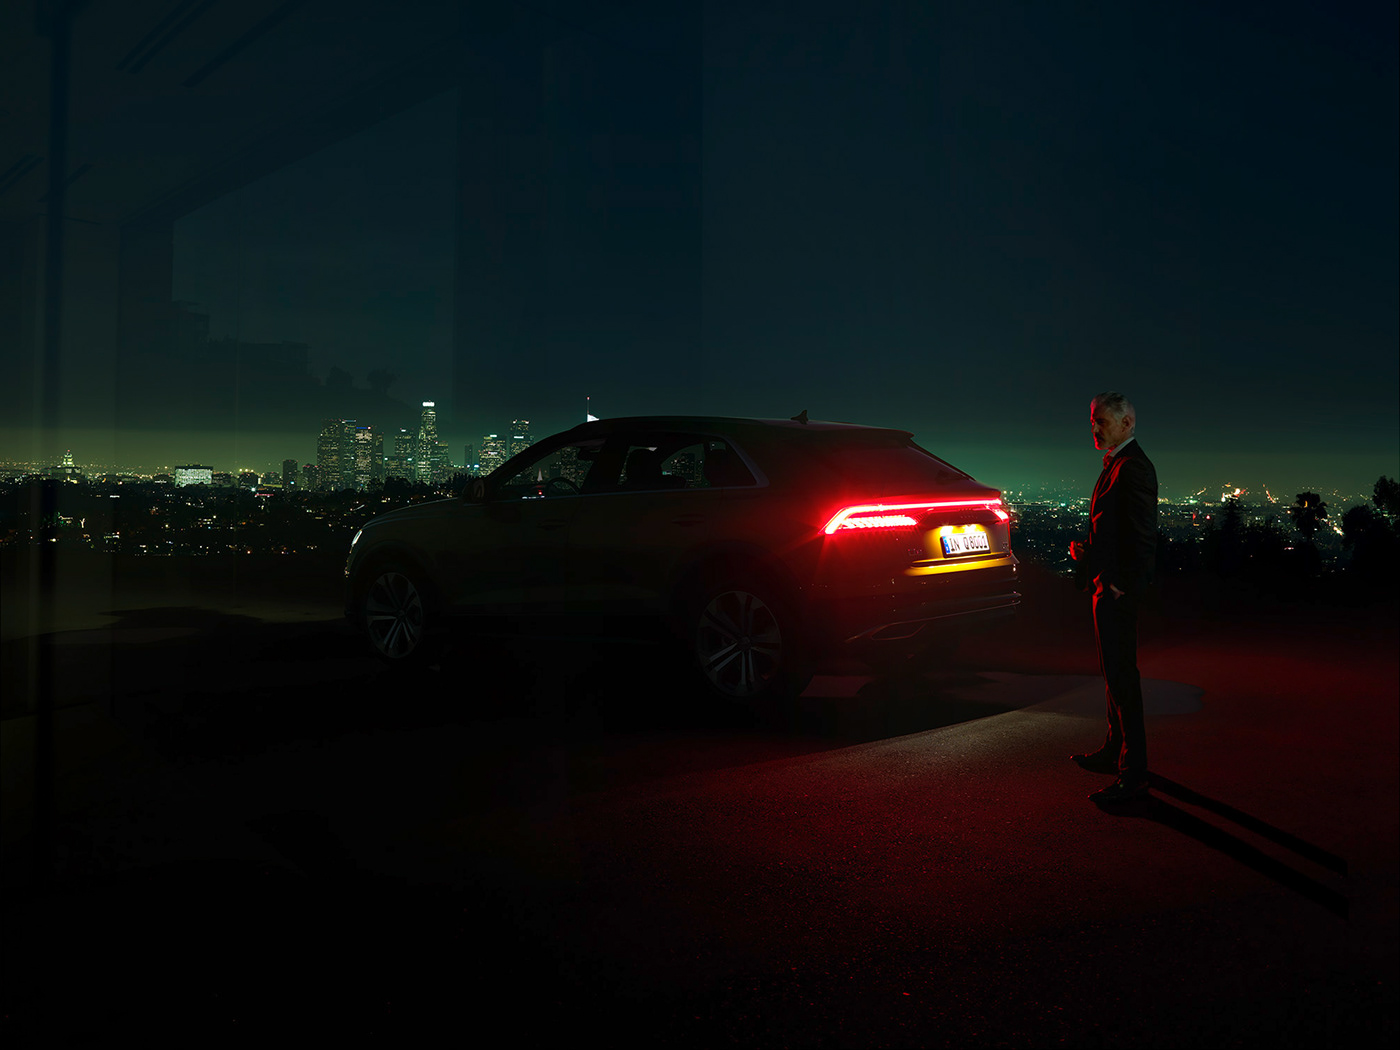 campaign transportation automotive   Audi Photography  Advertising  duettmann architecture Landscape luxury